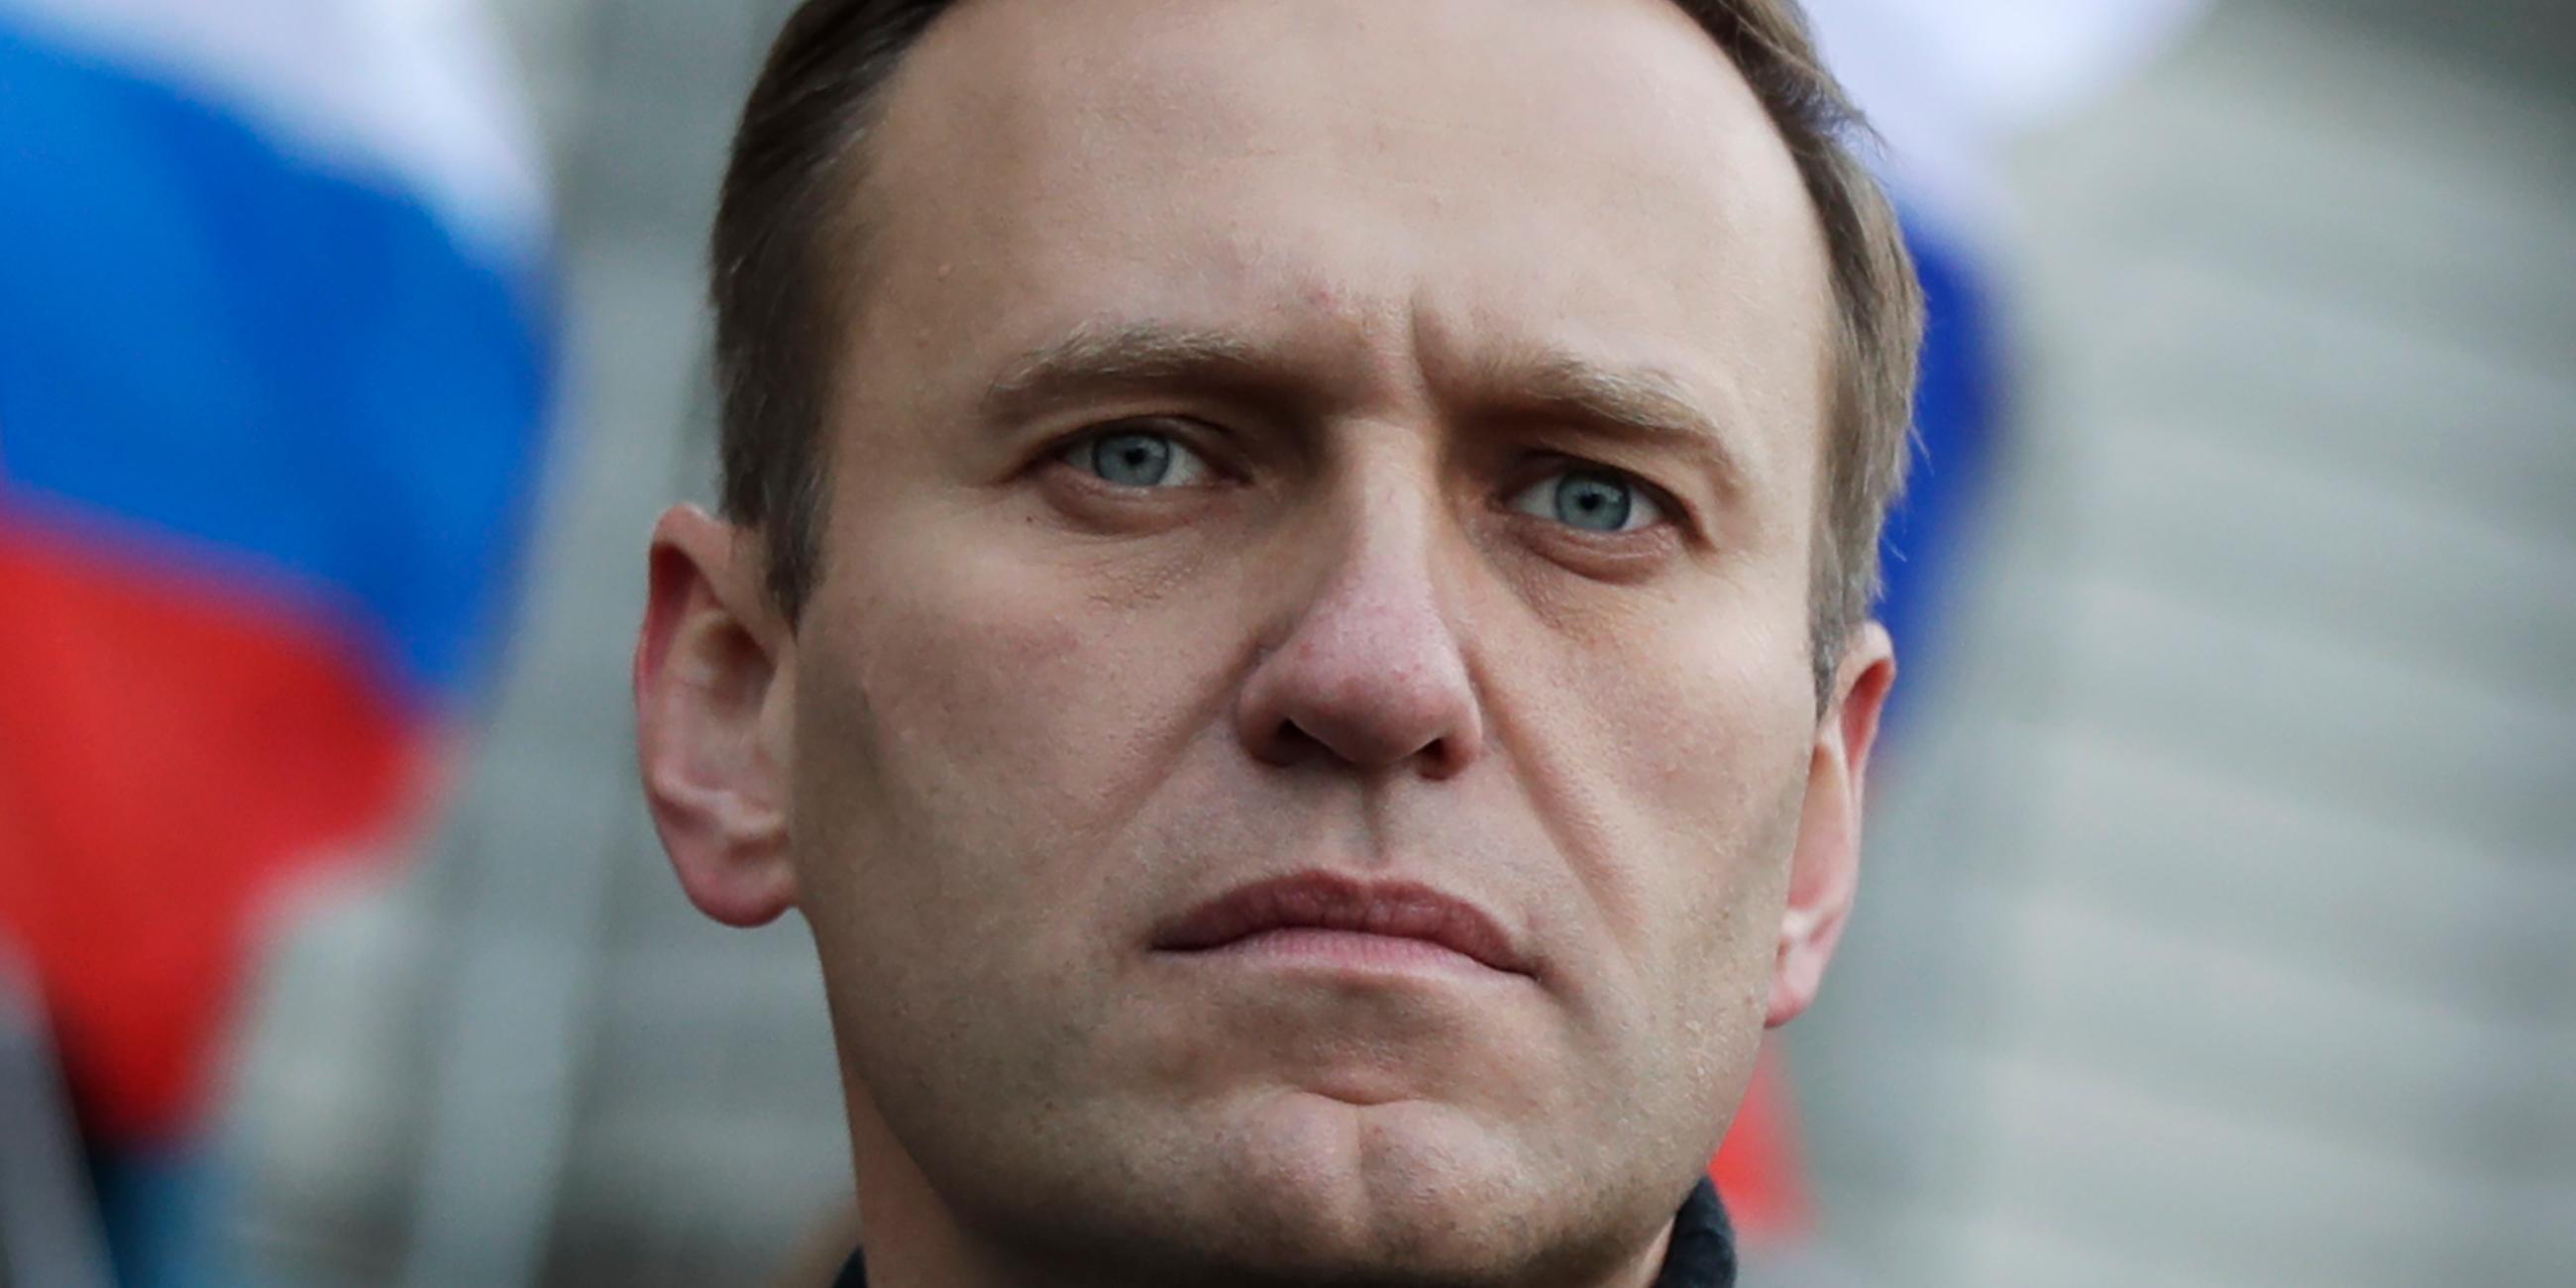 Der russische Oppositionsaktivist Alexej Nawalny nimmt Februar 2020 an einer Demonstration in Moskau teil.